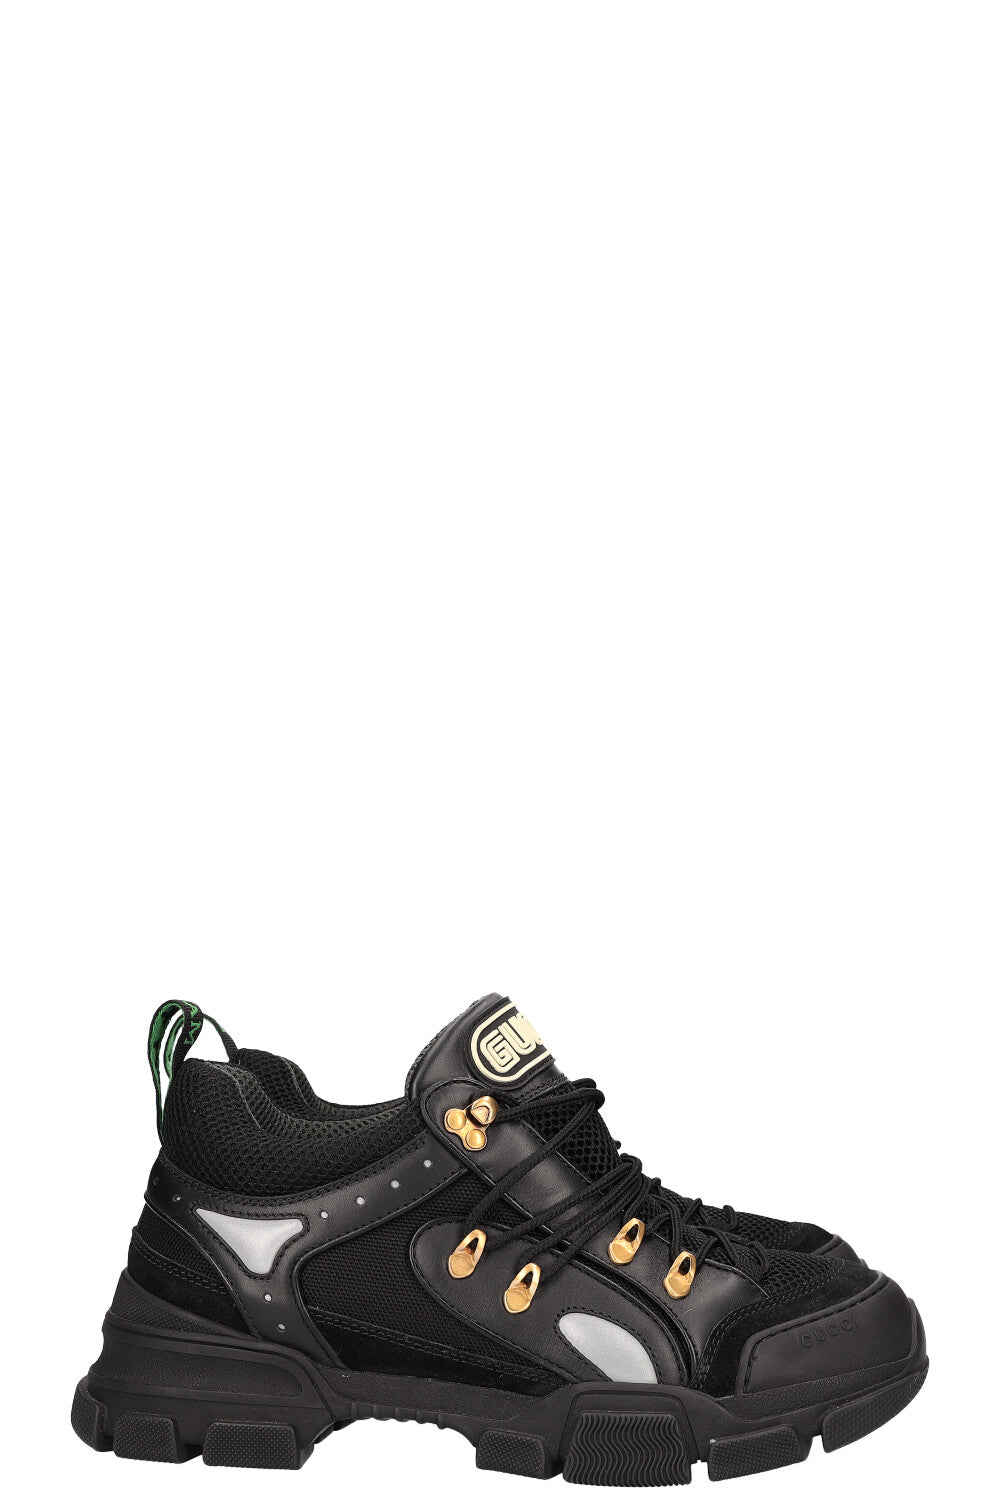 GUCCI Flashtreck Sneakers Black